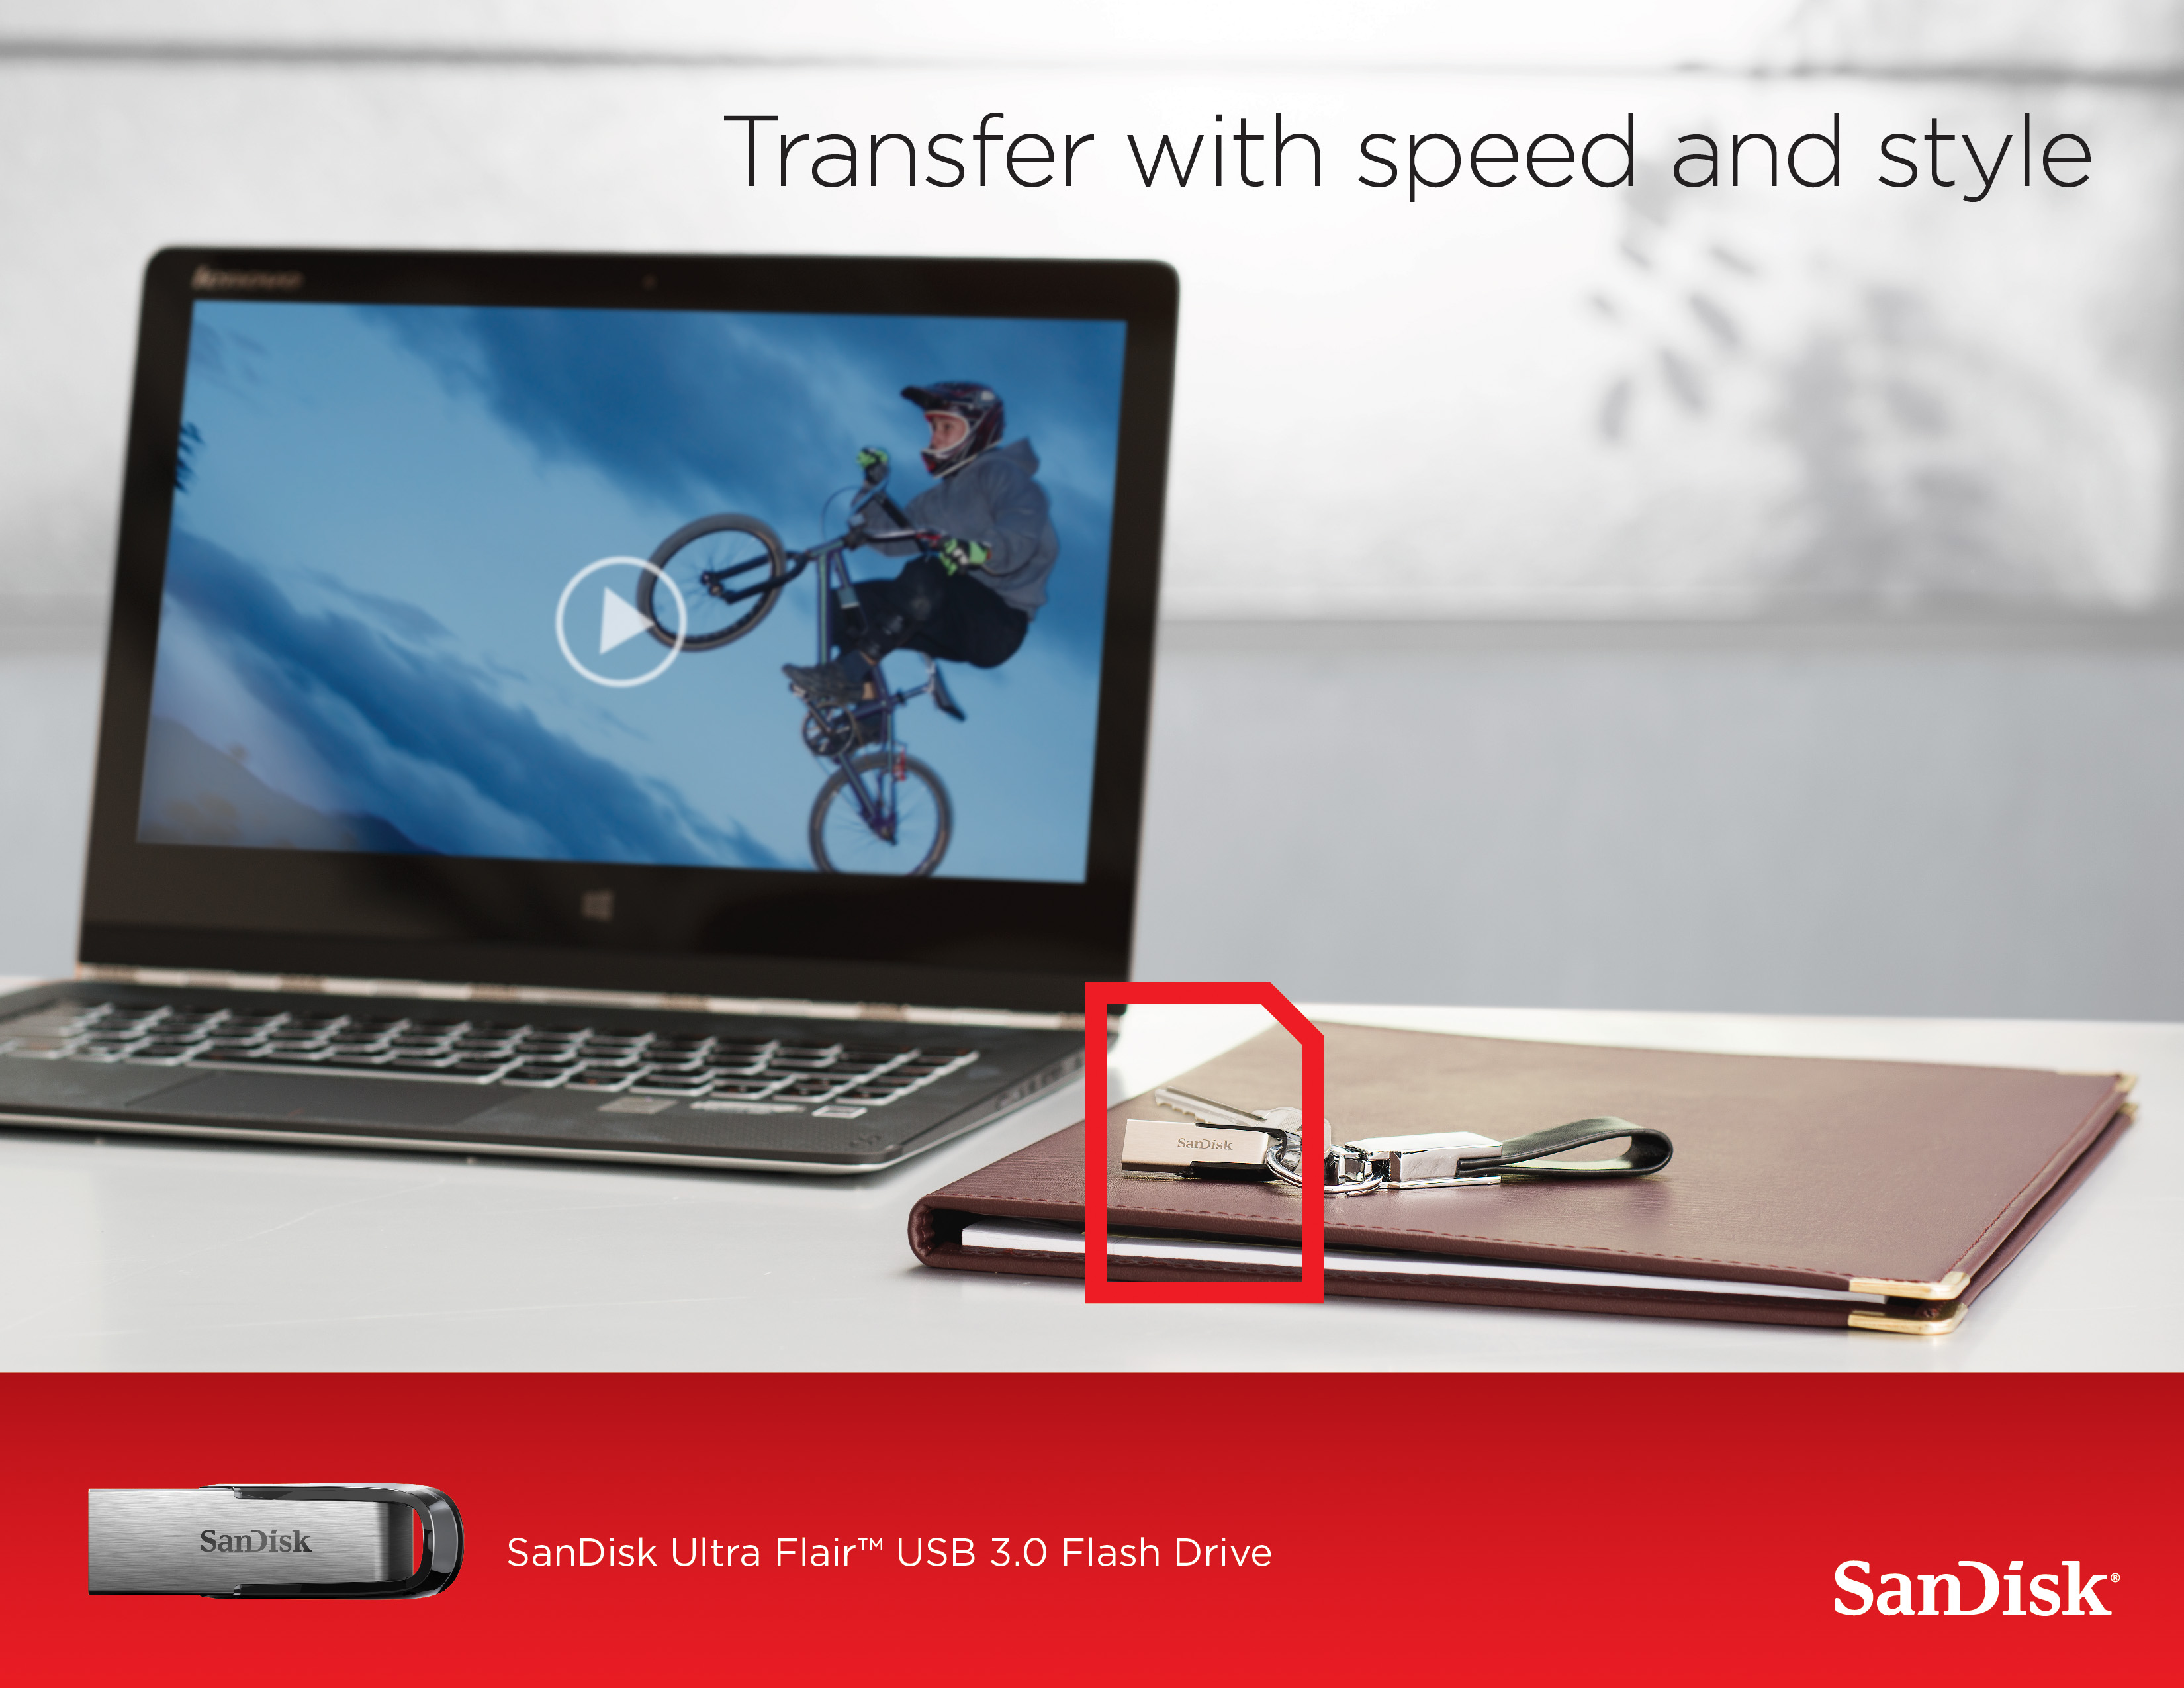 SANDISK HI-SPEED USB 3.0 64GB